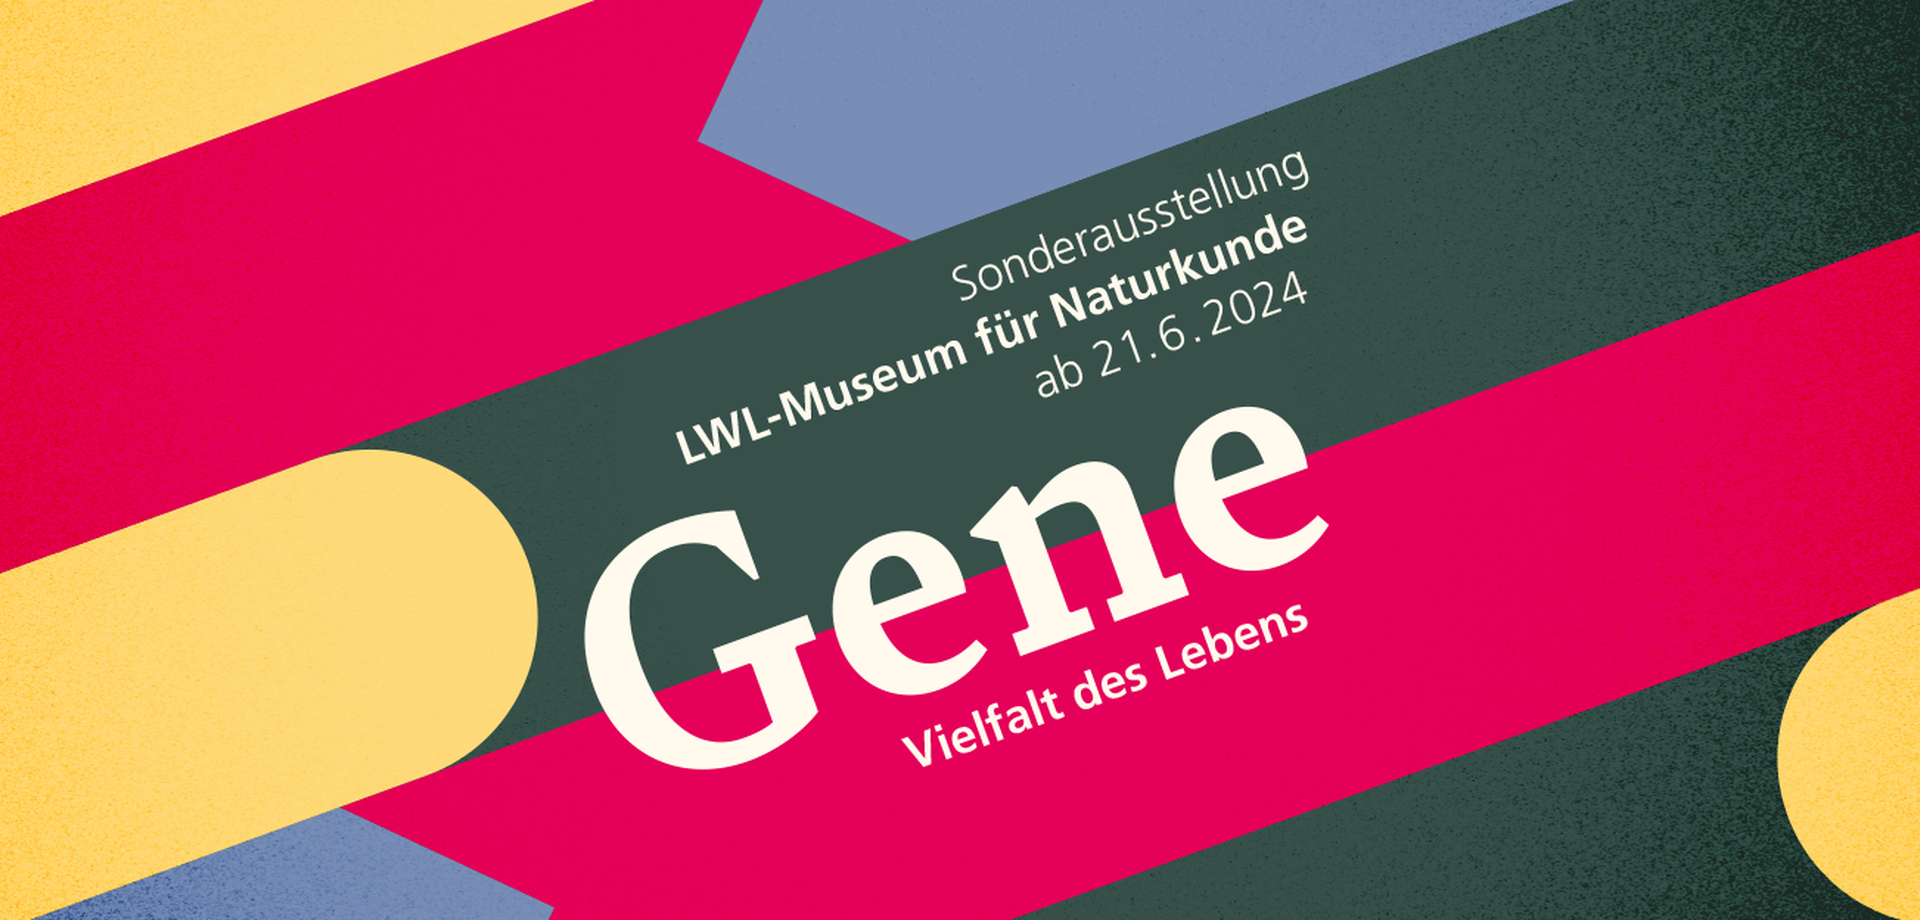 Plakat zur Ausstellung mit bunten Farben und Text: Sonderausstellung, LWL-Museum für Naturkunde, ab 21.06.2024, Gene - Vielfalt des Lebens.